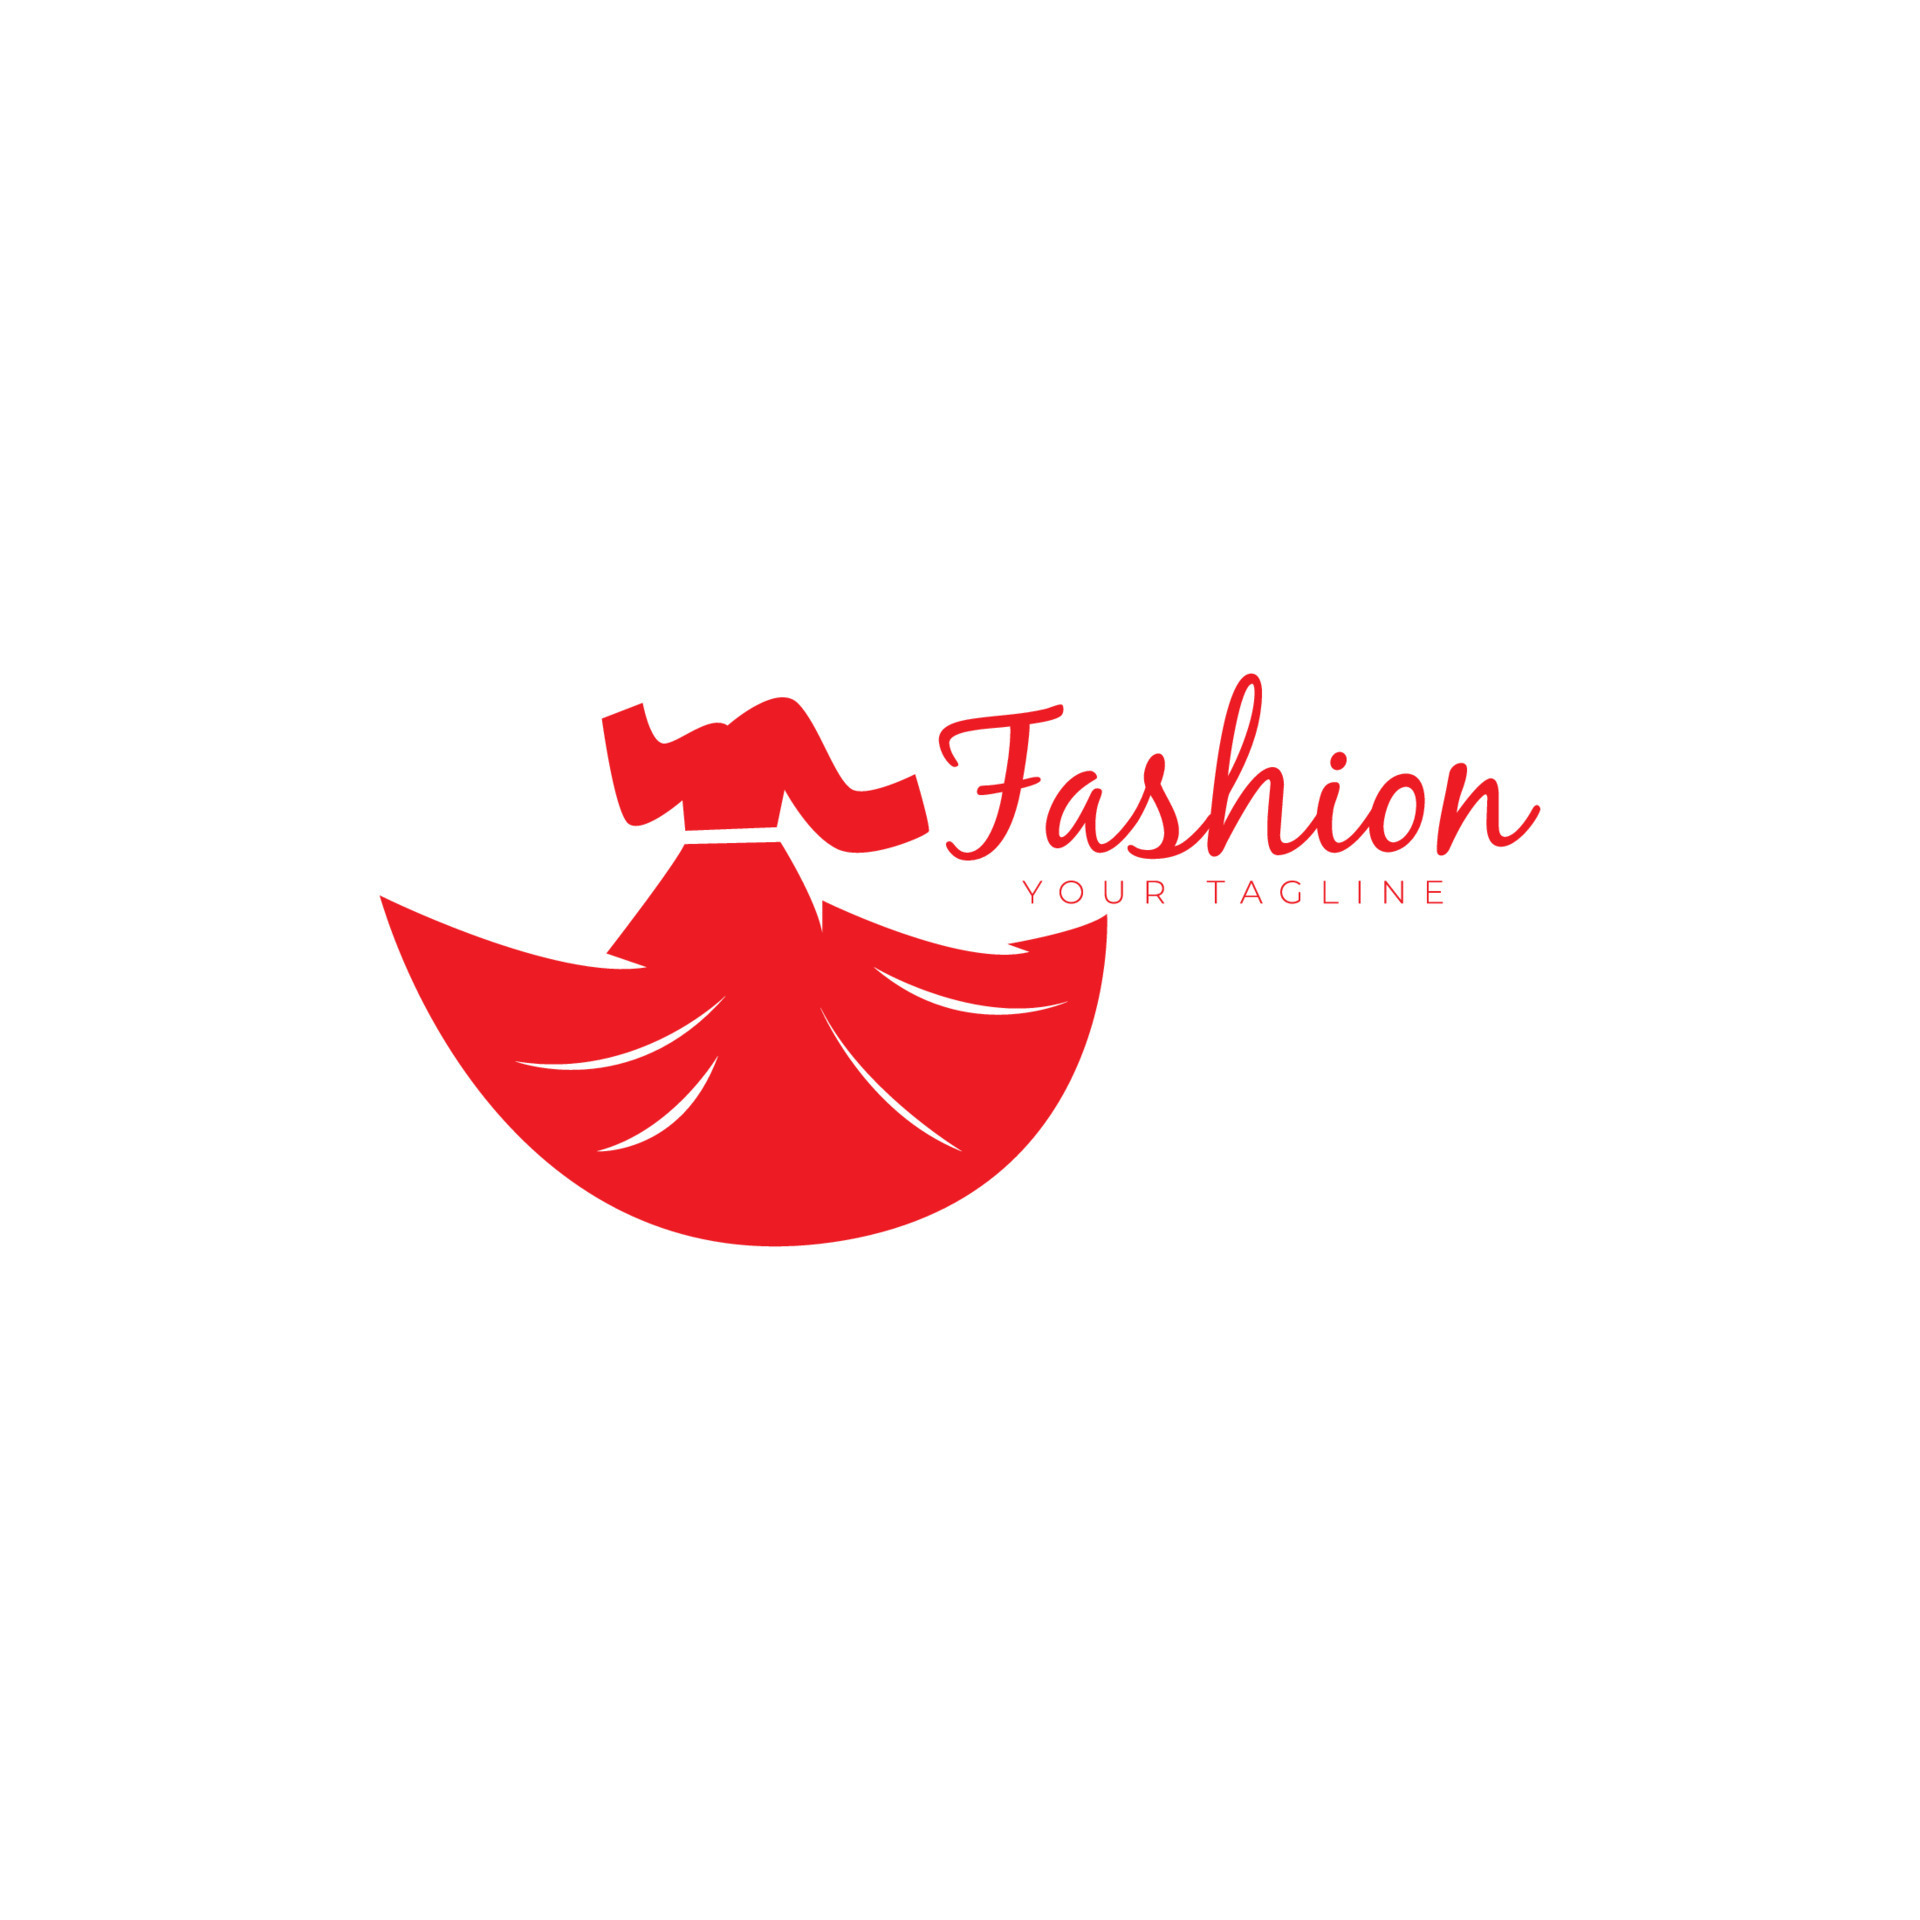 Kijker Aanvankelijk woensdag logo jurk vrouwen kleding mode schoonheid winkel ontwerp voor merken kleding  winkels 17777056 Vectorkunst bij Vecteezy